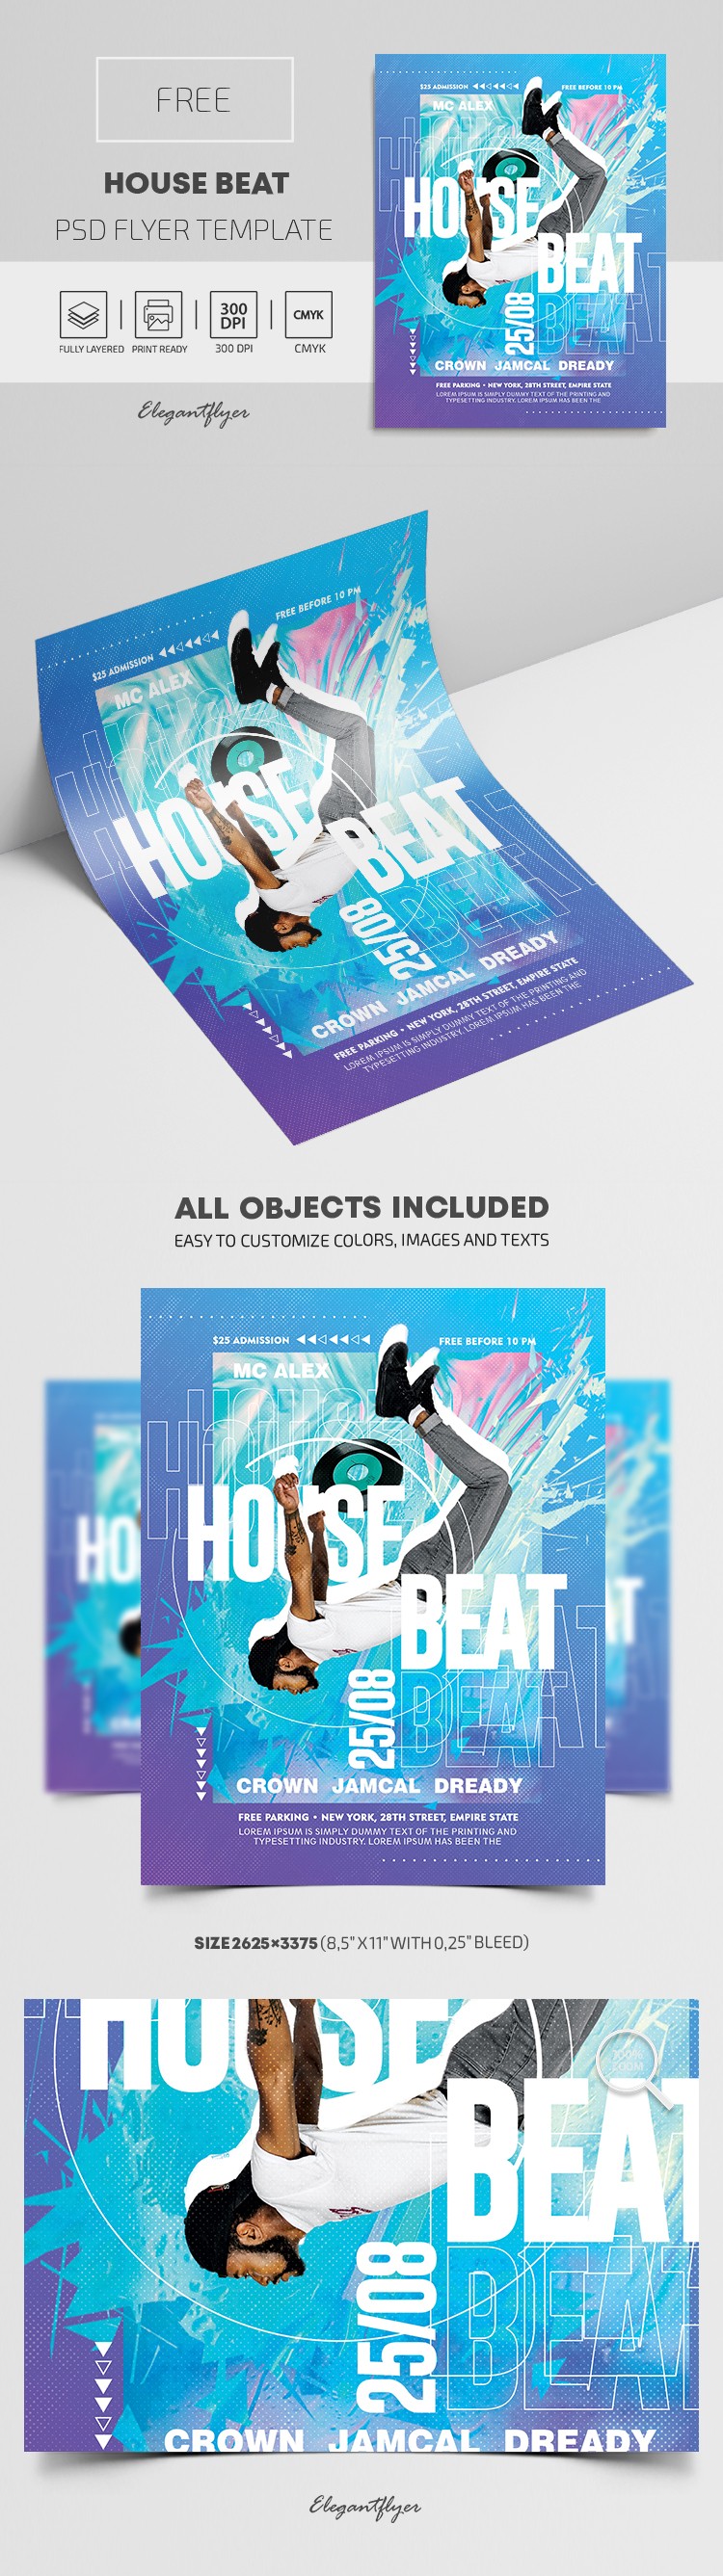 House Beat Flyer by ElegantFlyer